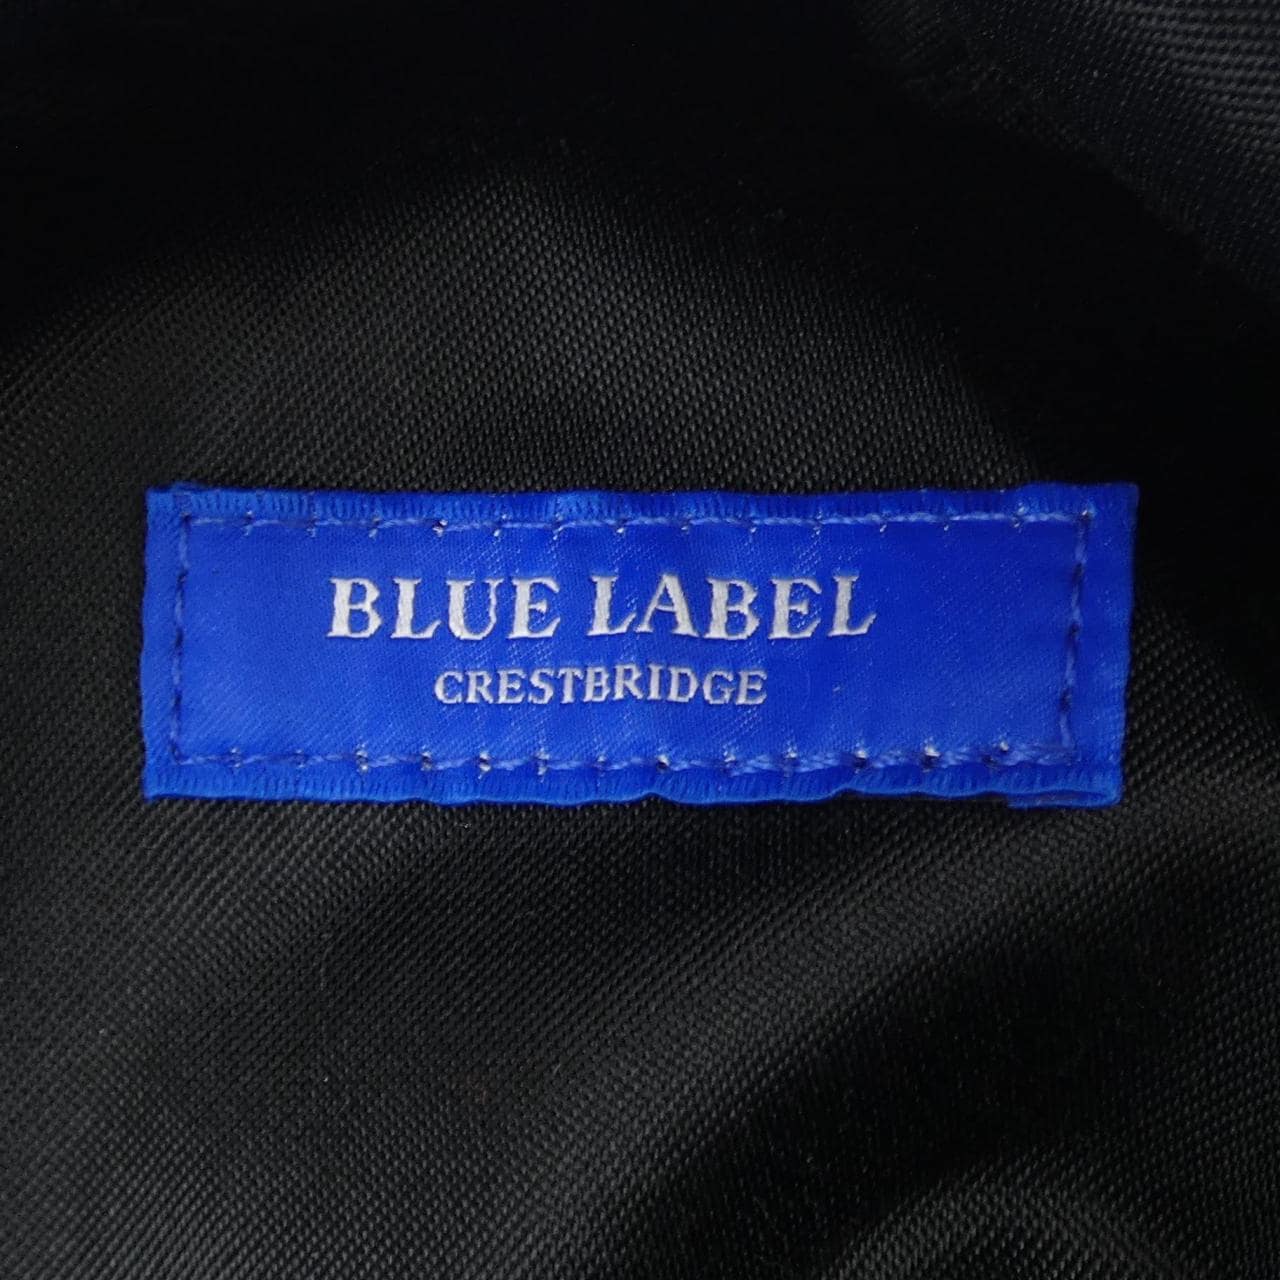 Blue Label Crest Bridge BLUE LABEL CRESTBRID BACKPACK